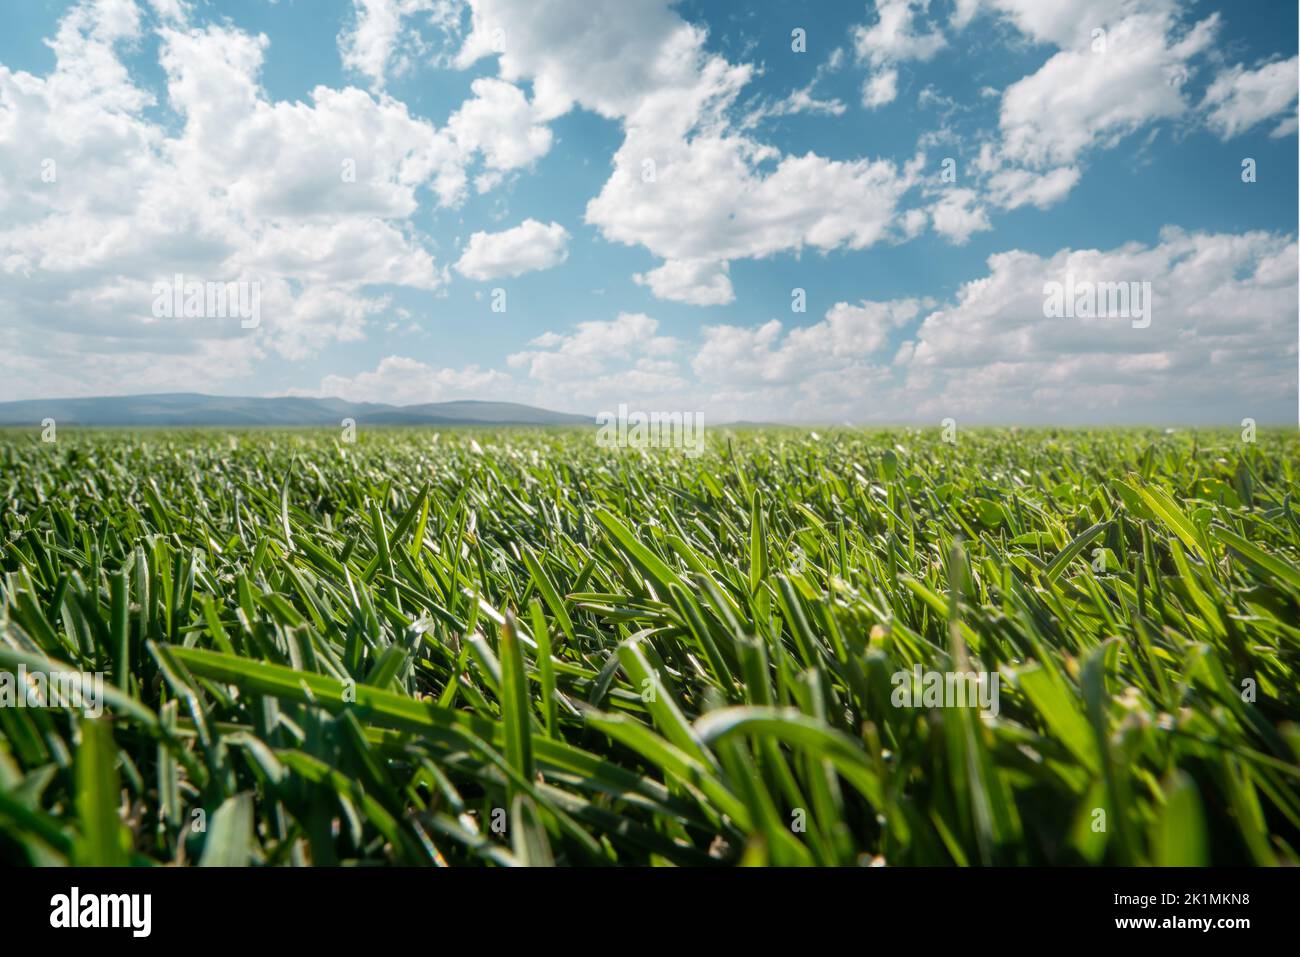 Grüne Rasenblätter im offenen Feld, Natur oder Park gegen den offenen Himmel mit weißen geschwollenen Wolken. Hochwertige Fotos Stockfoto